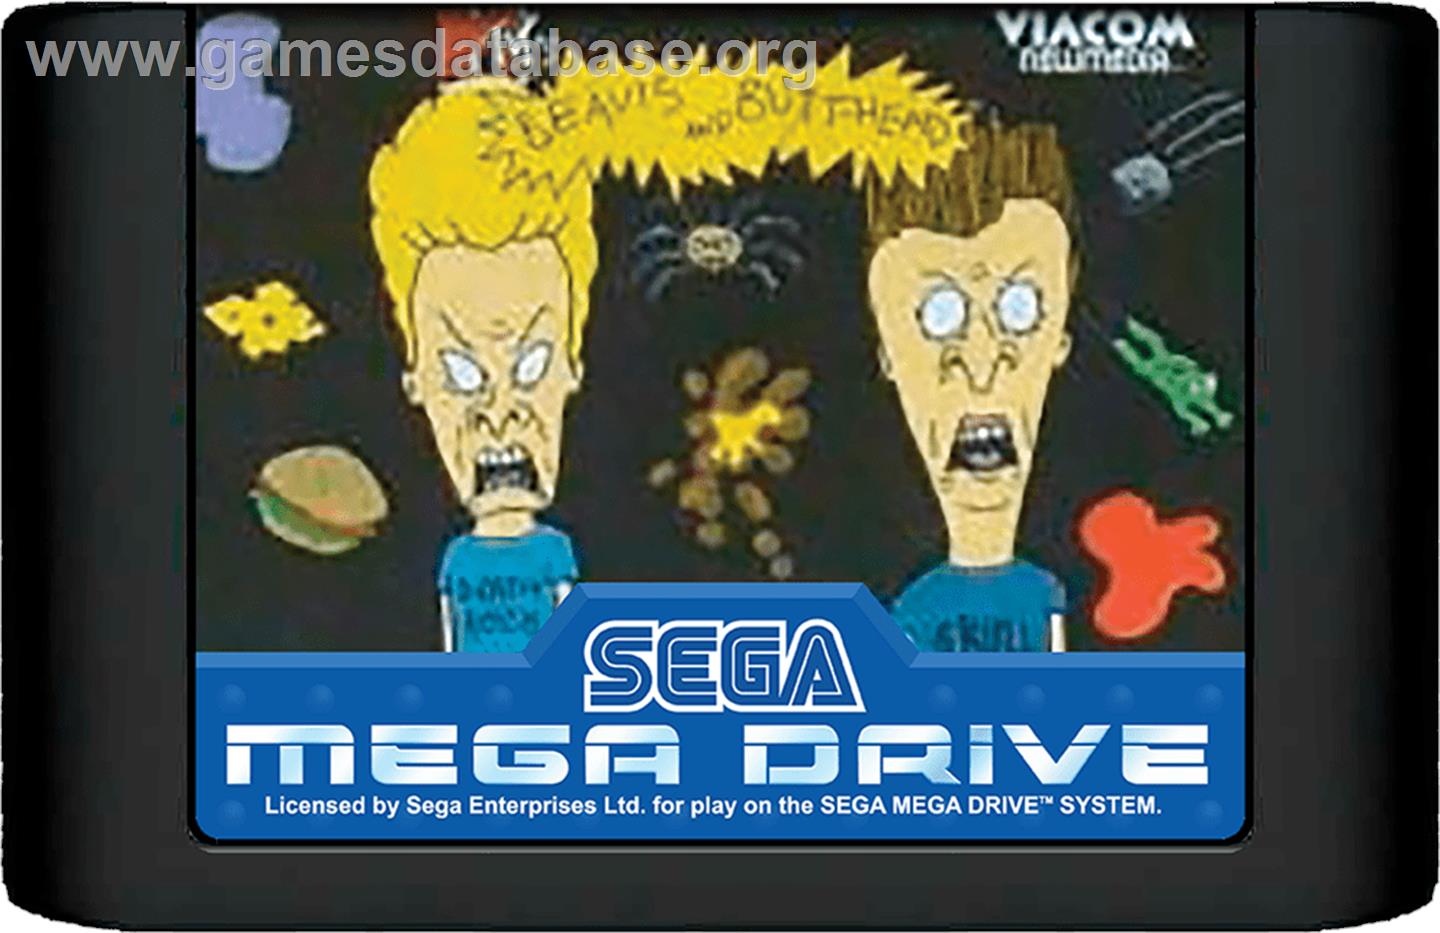 MTV's Beavis and Butthead - Sega Genesis - Artwork - Cartridge